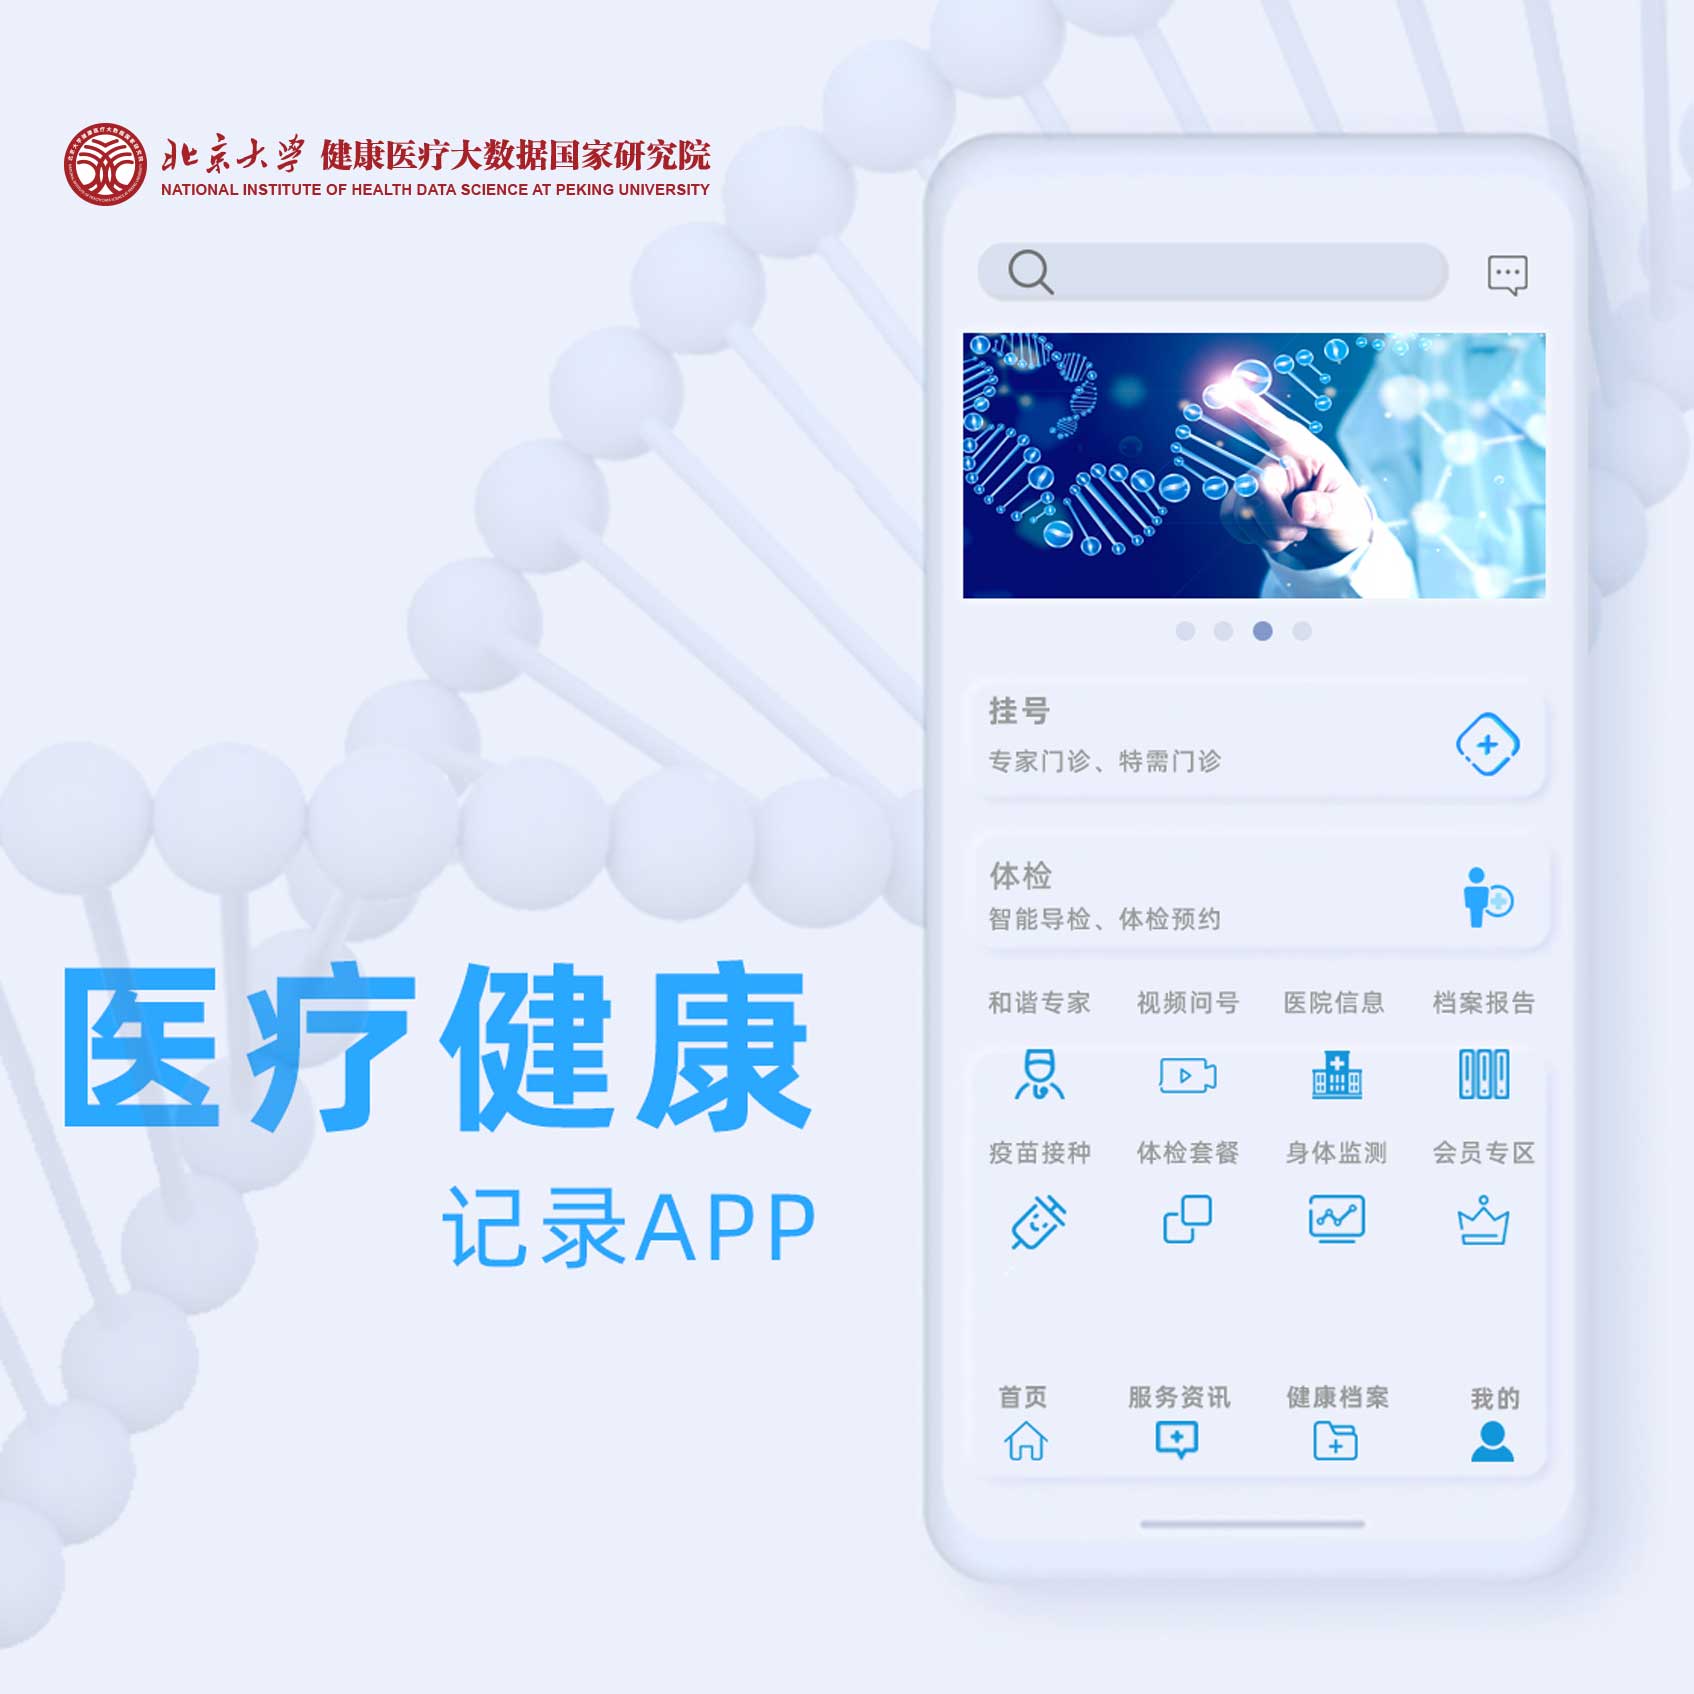 北京大学健康医疗大数据国家研究院-医疗健康记录APPUI交互设计